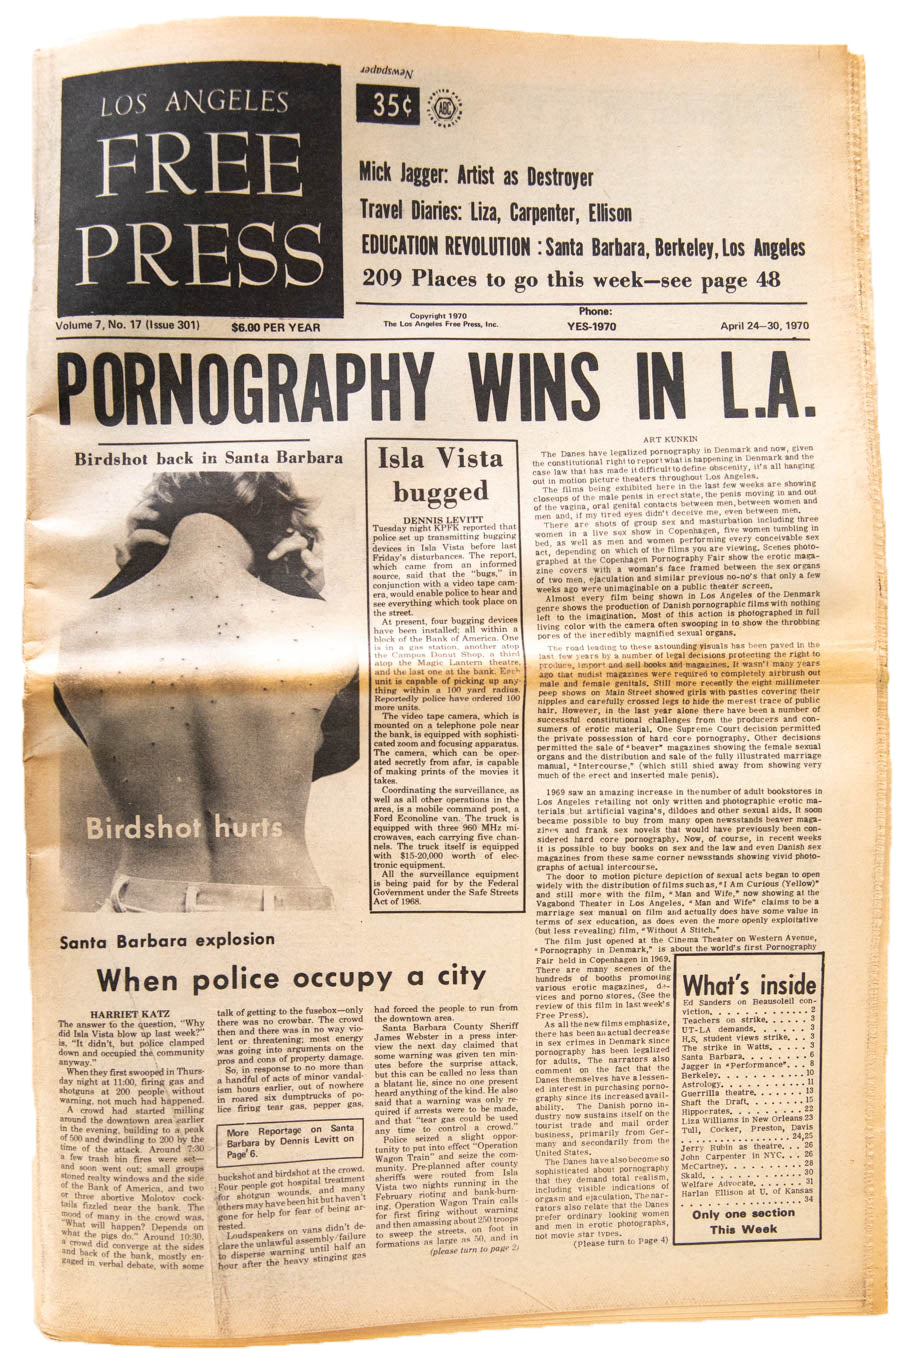 LOS ANGELES FREE PRESS Vol. 7 No. 17